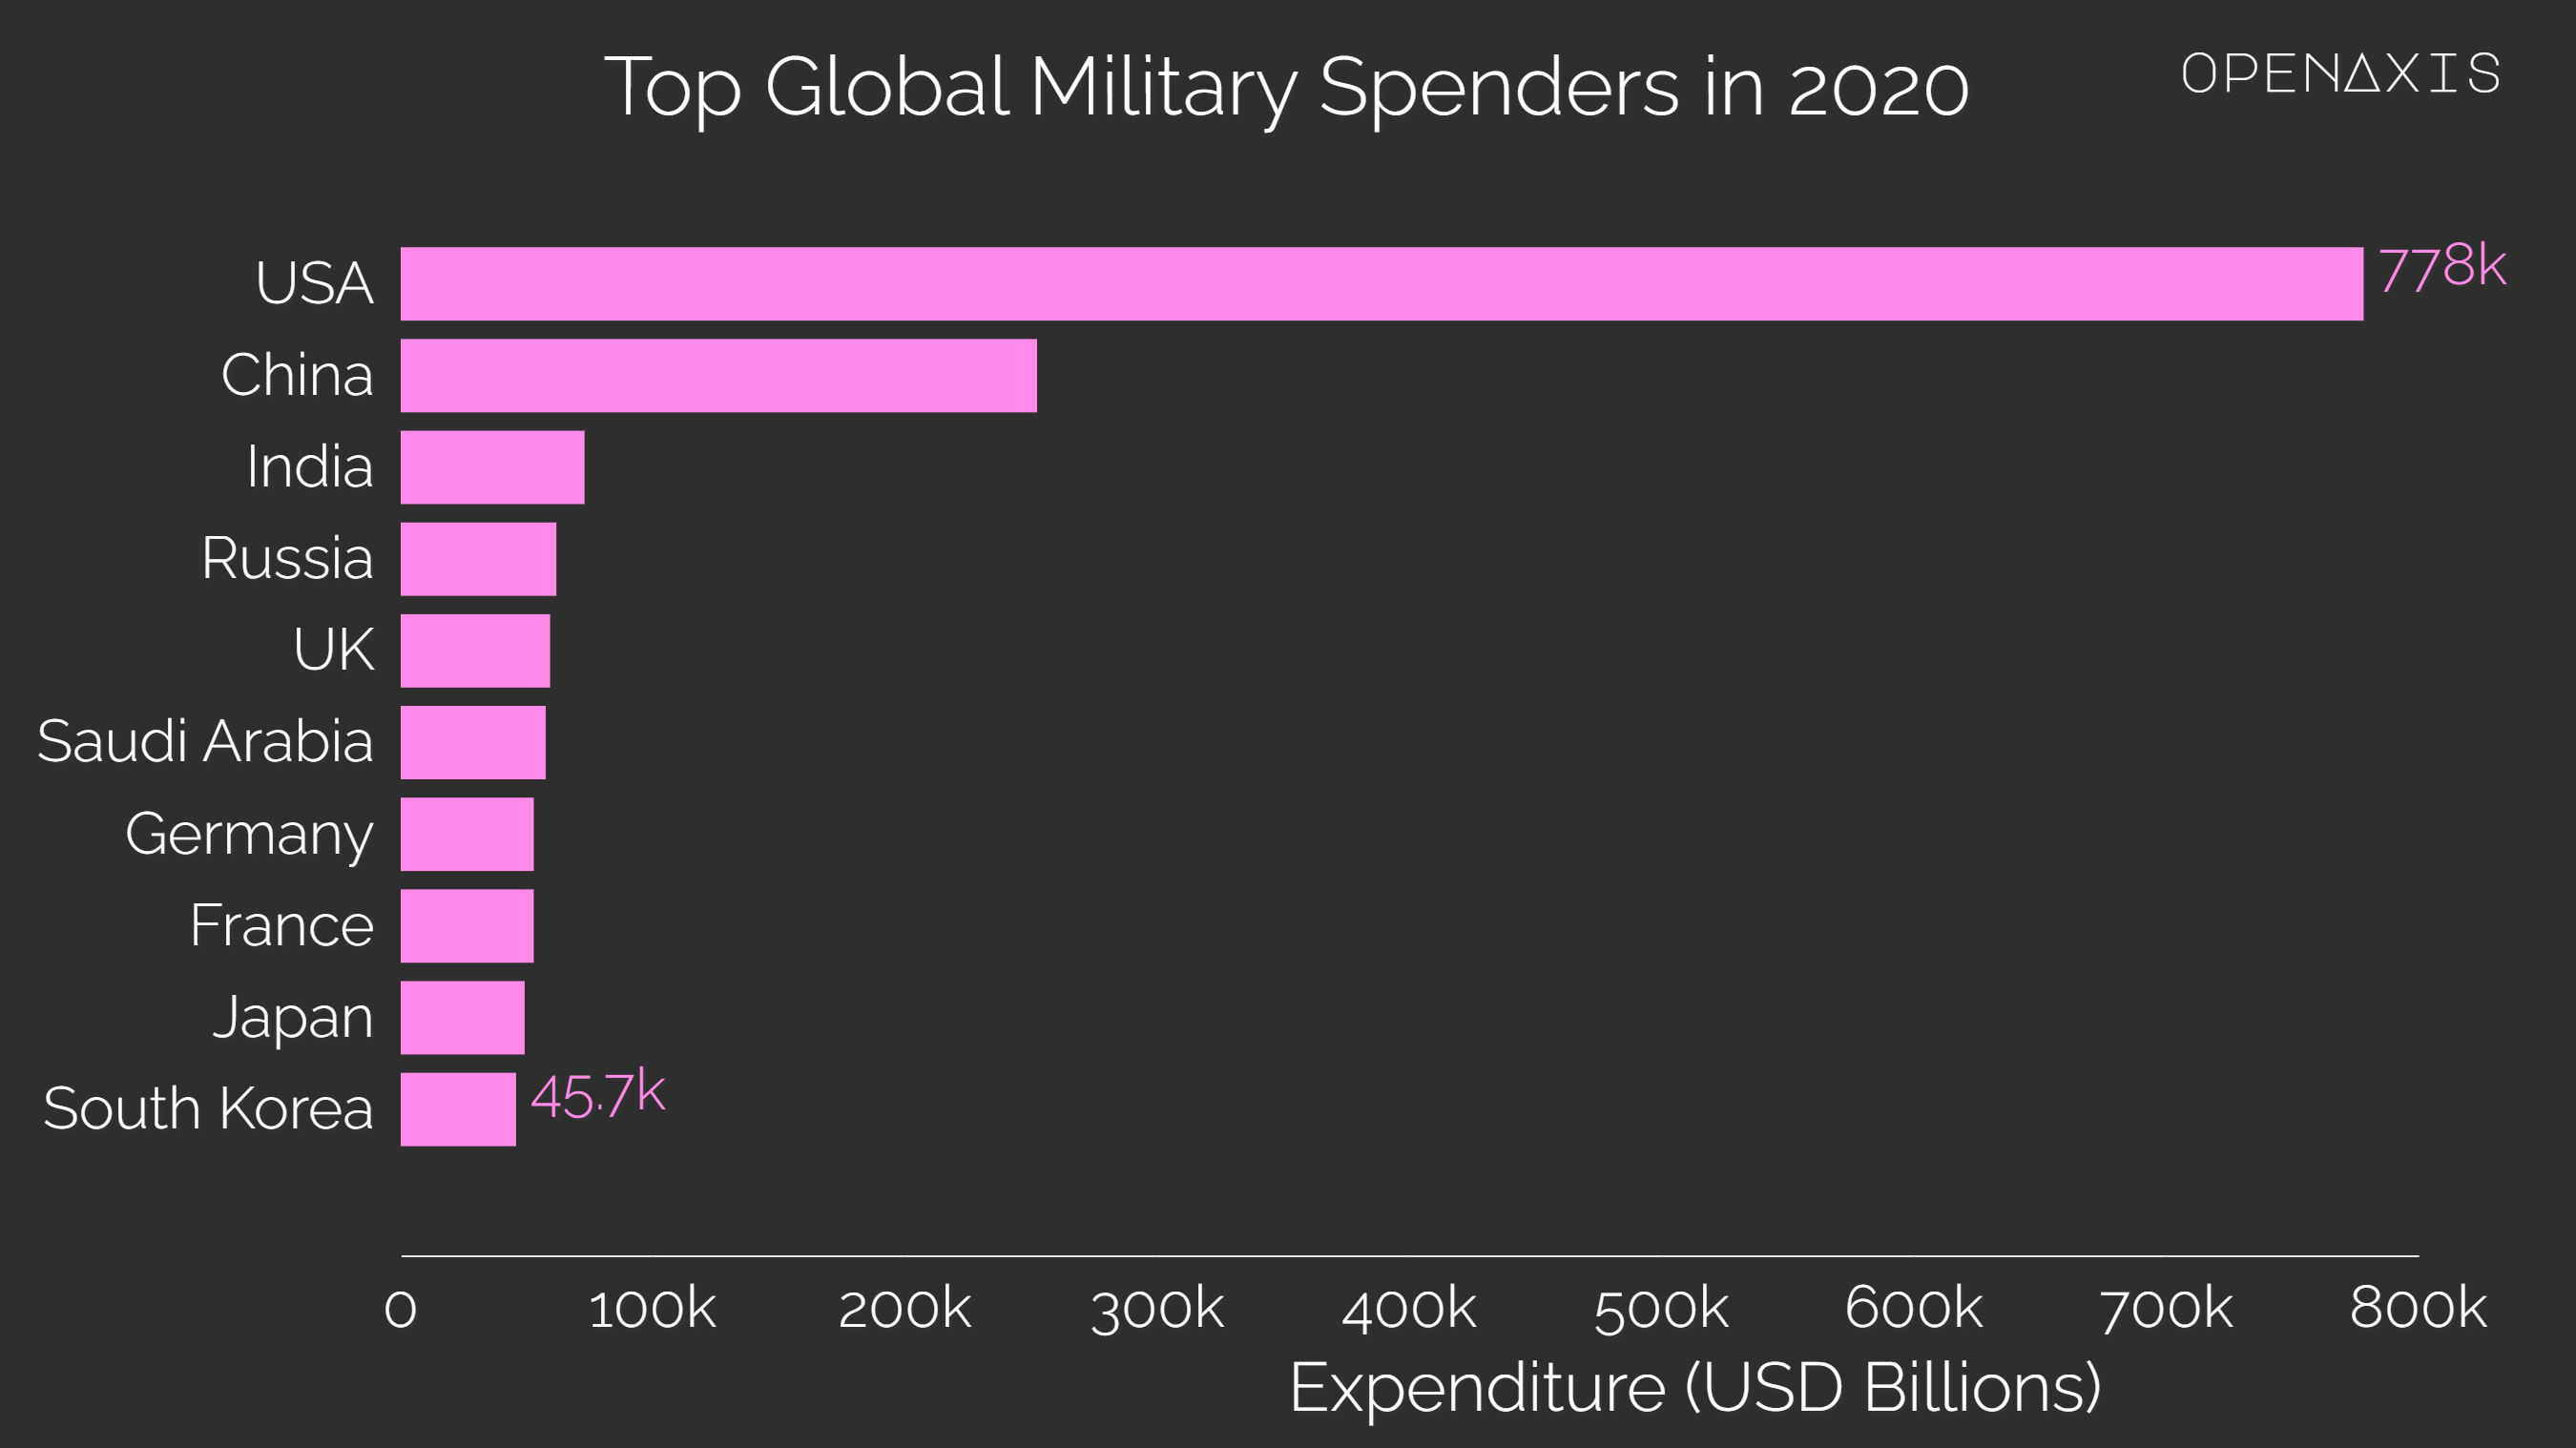 "Top Global Military Spenders in 2020"